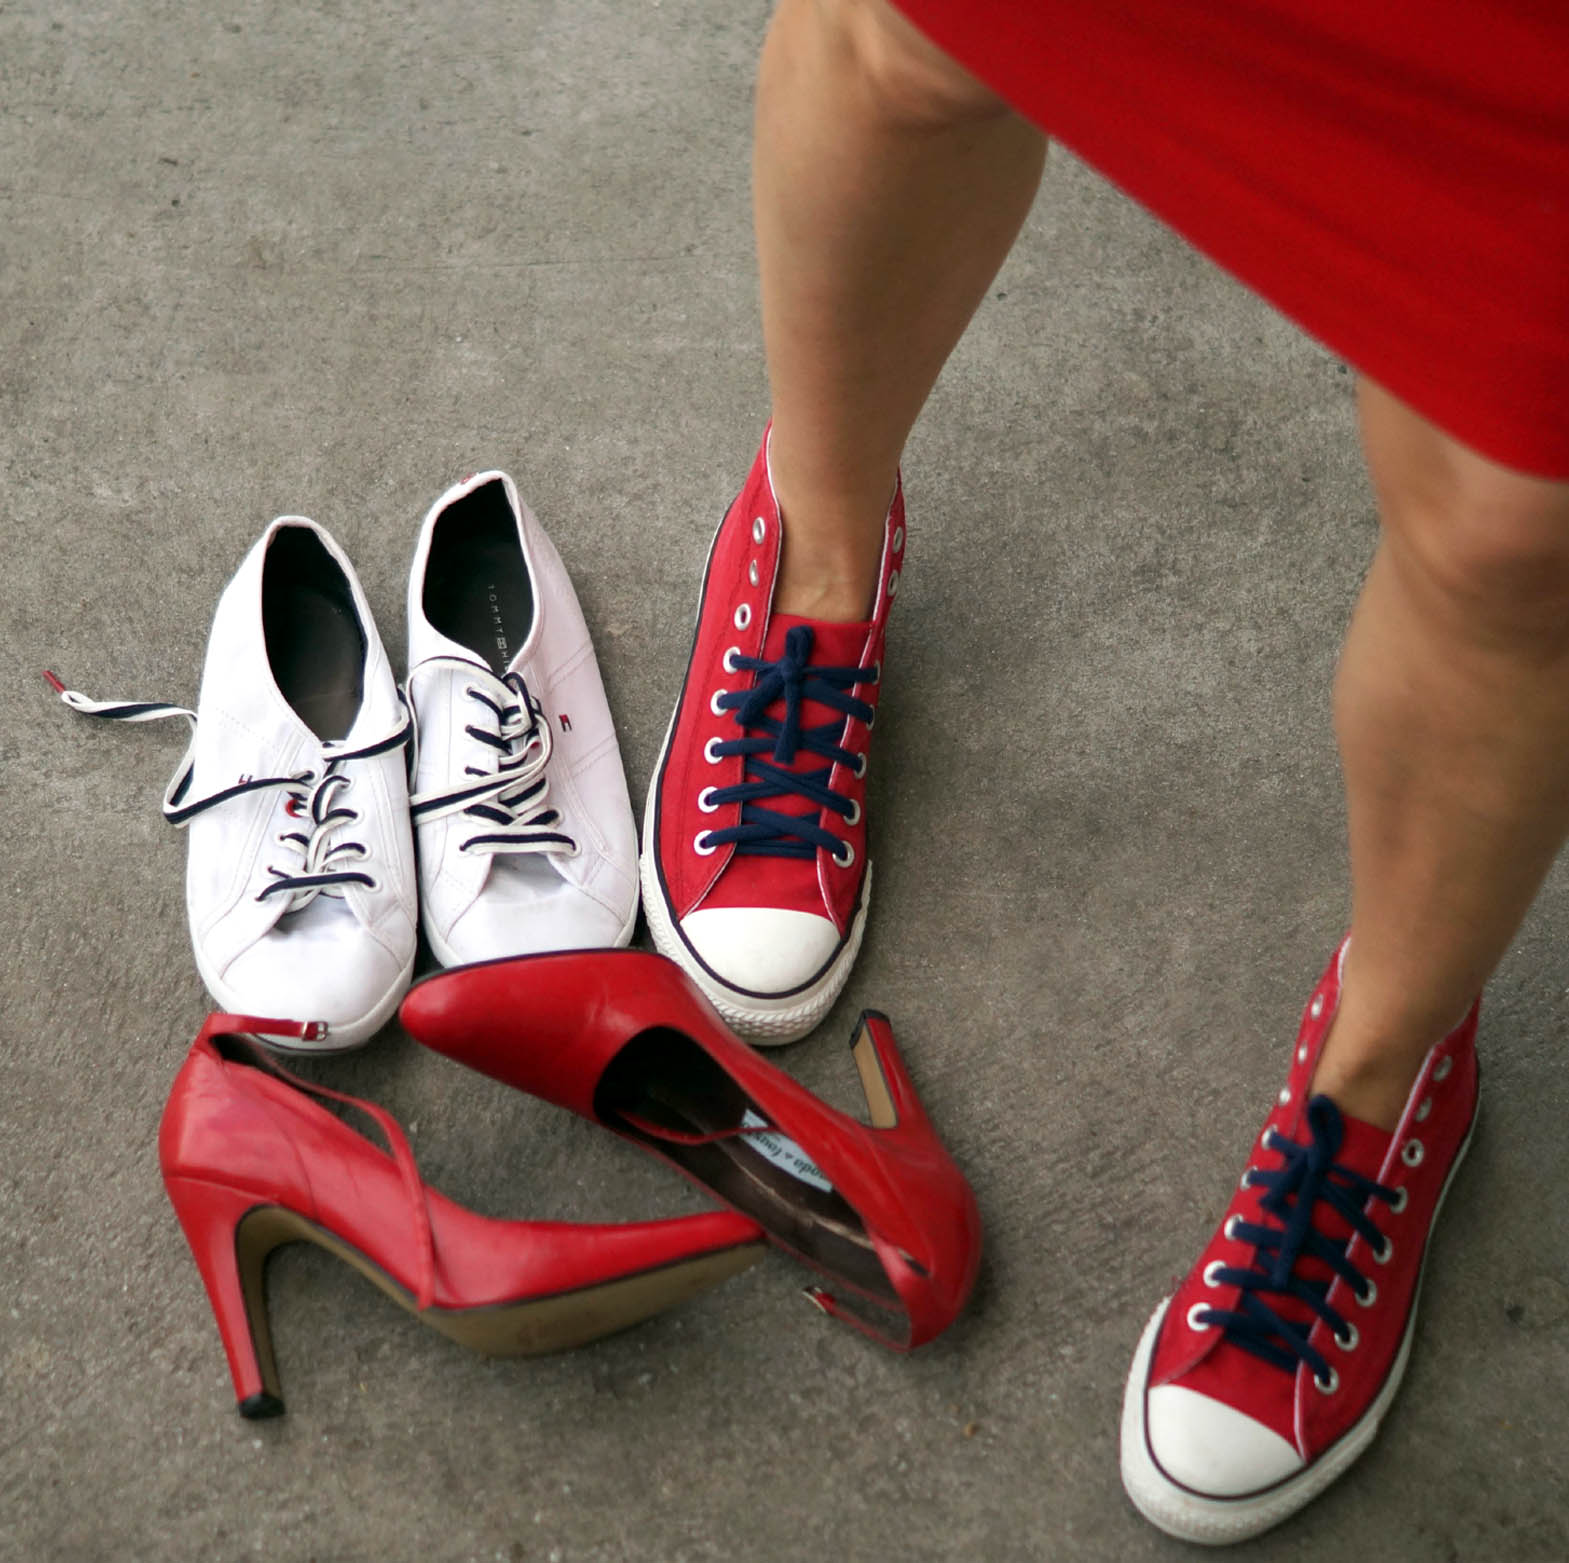 Różne rodzaje obuwia - spersonalizowany styl